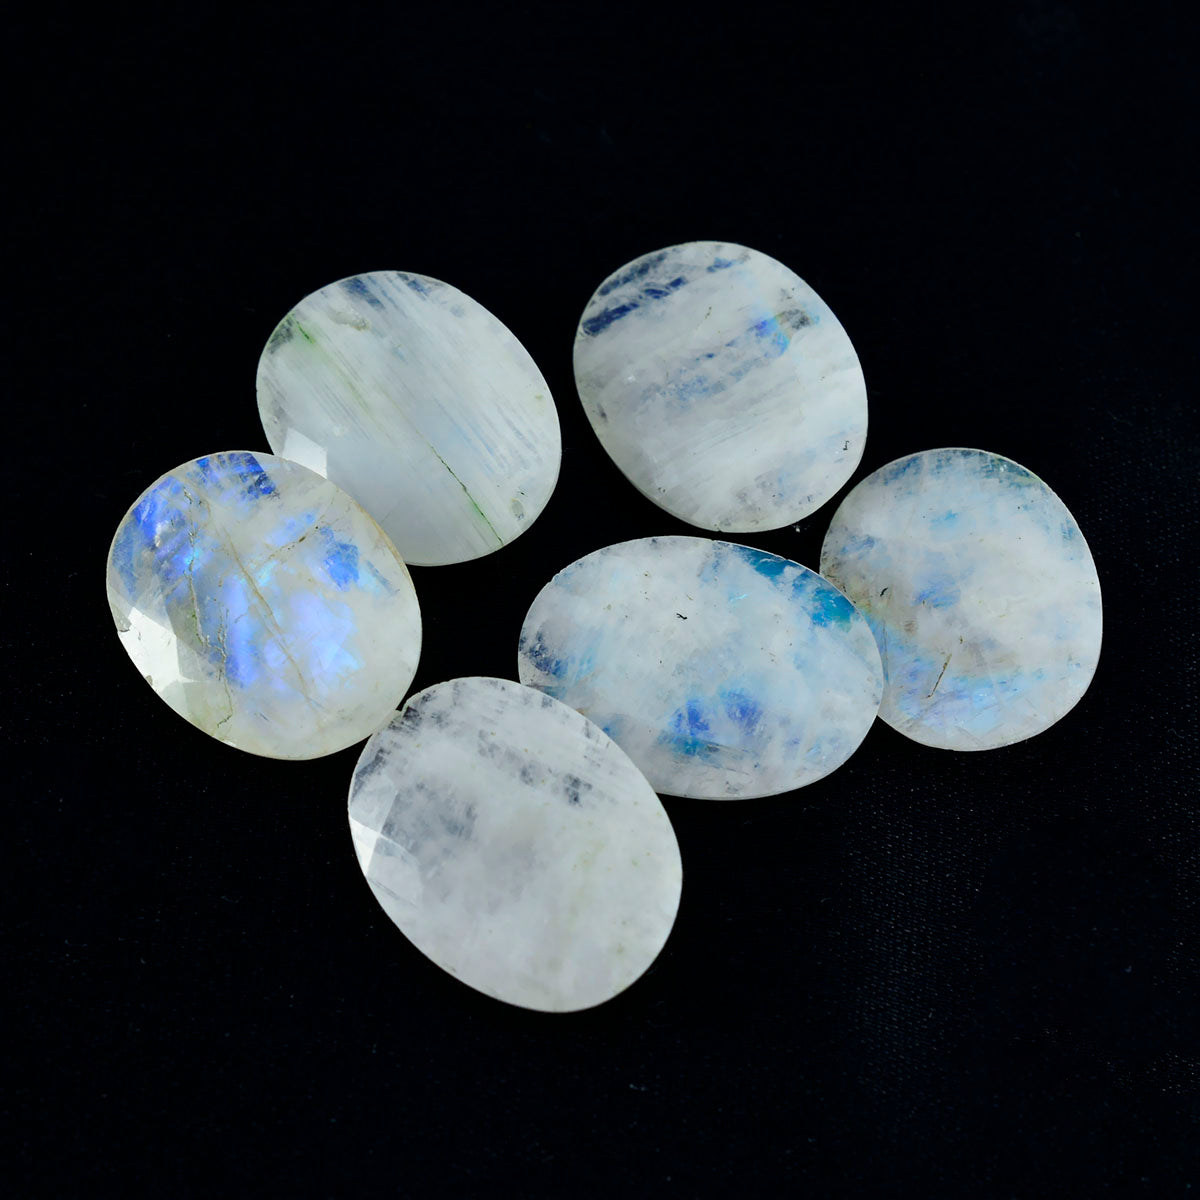 Riyogems 1 Stück weißer Regenbogen-Mondstein, facettiert, 10 x 14 mm, ovale Form, wunderschöne lose Edelsteine von Qualität